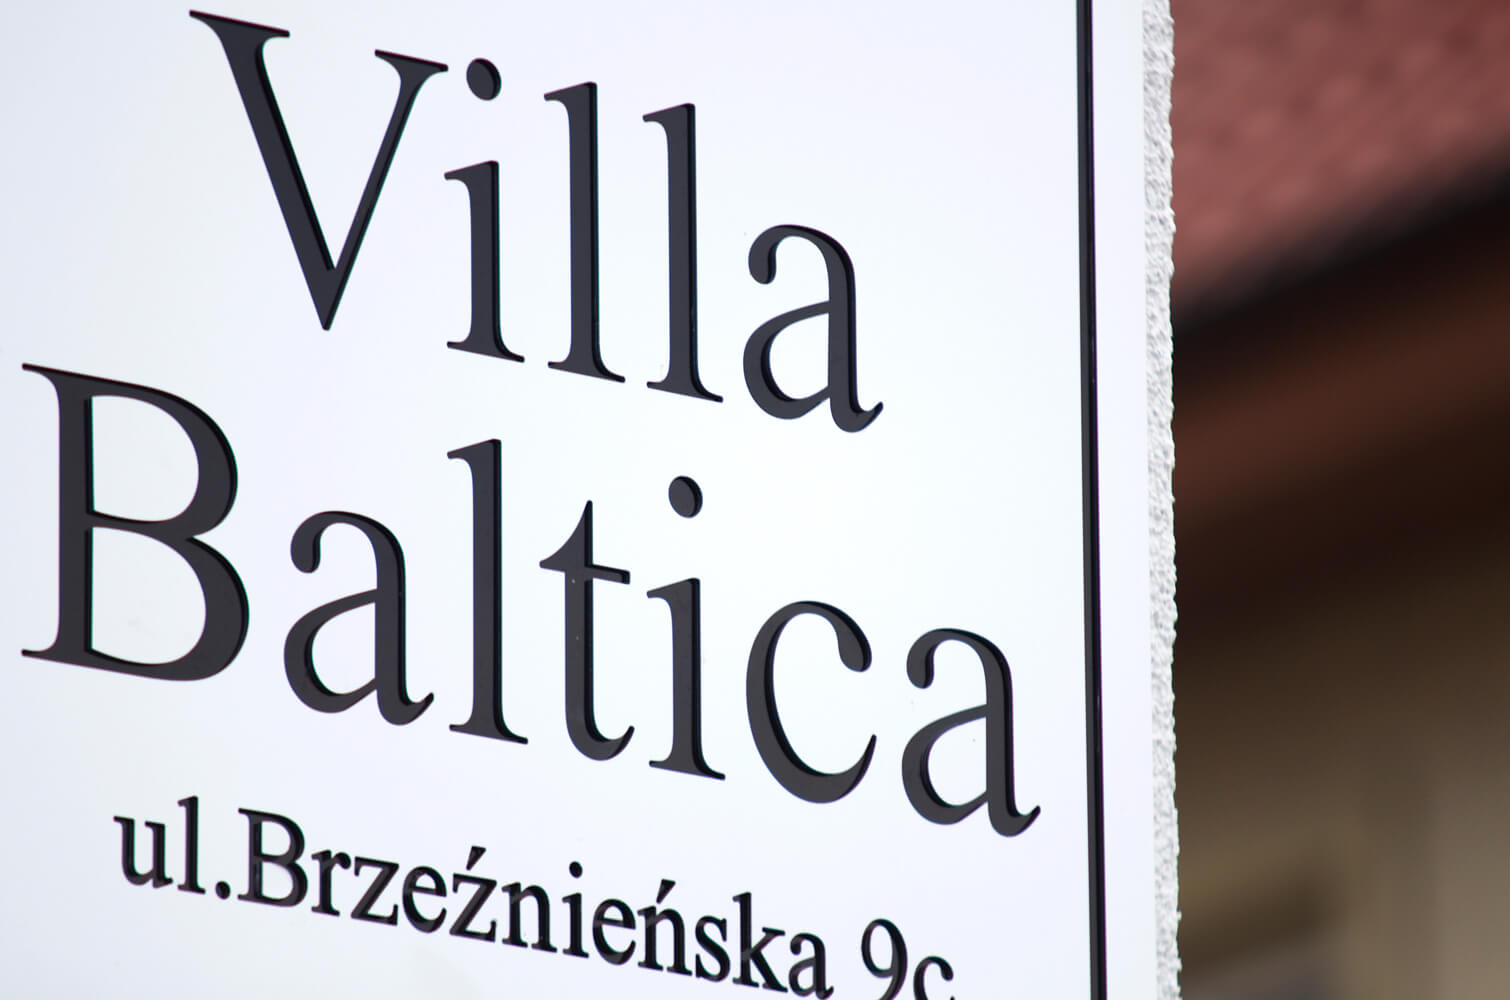 Villa Baltica - company's logo on a dibond coffer in matt white